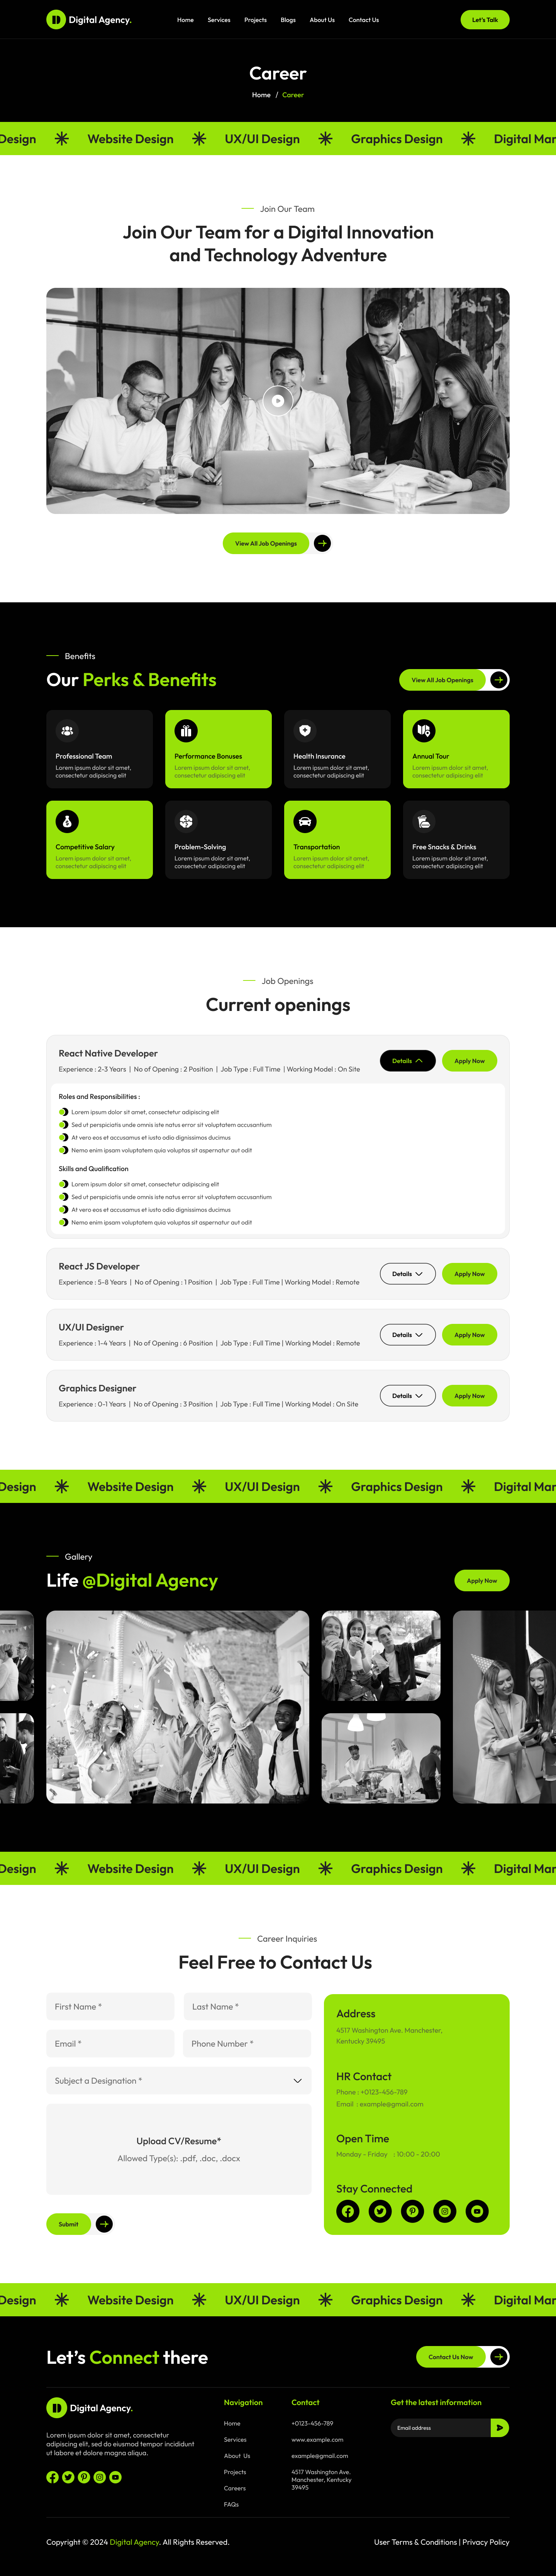 digital Agency website figma Career Page ui ux design